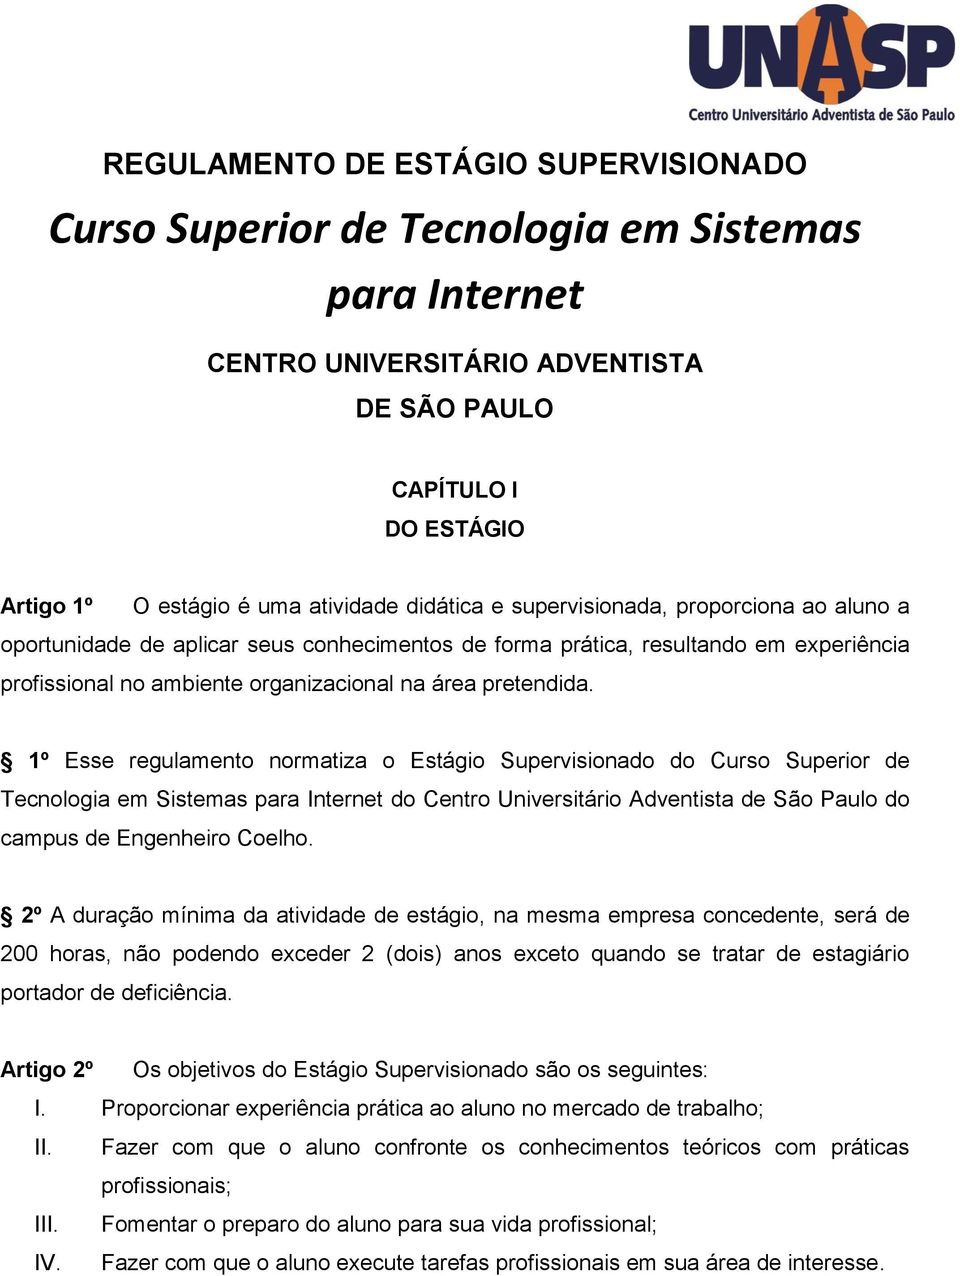 1º Esse regulamento normatiza o Estágio Supervisionado do Curso Superior de Tecnologia em Sistemas para Internet do Centro Universitário Adventista de São Paulo do campus de Engenheiro Coelho.